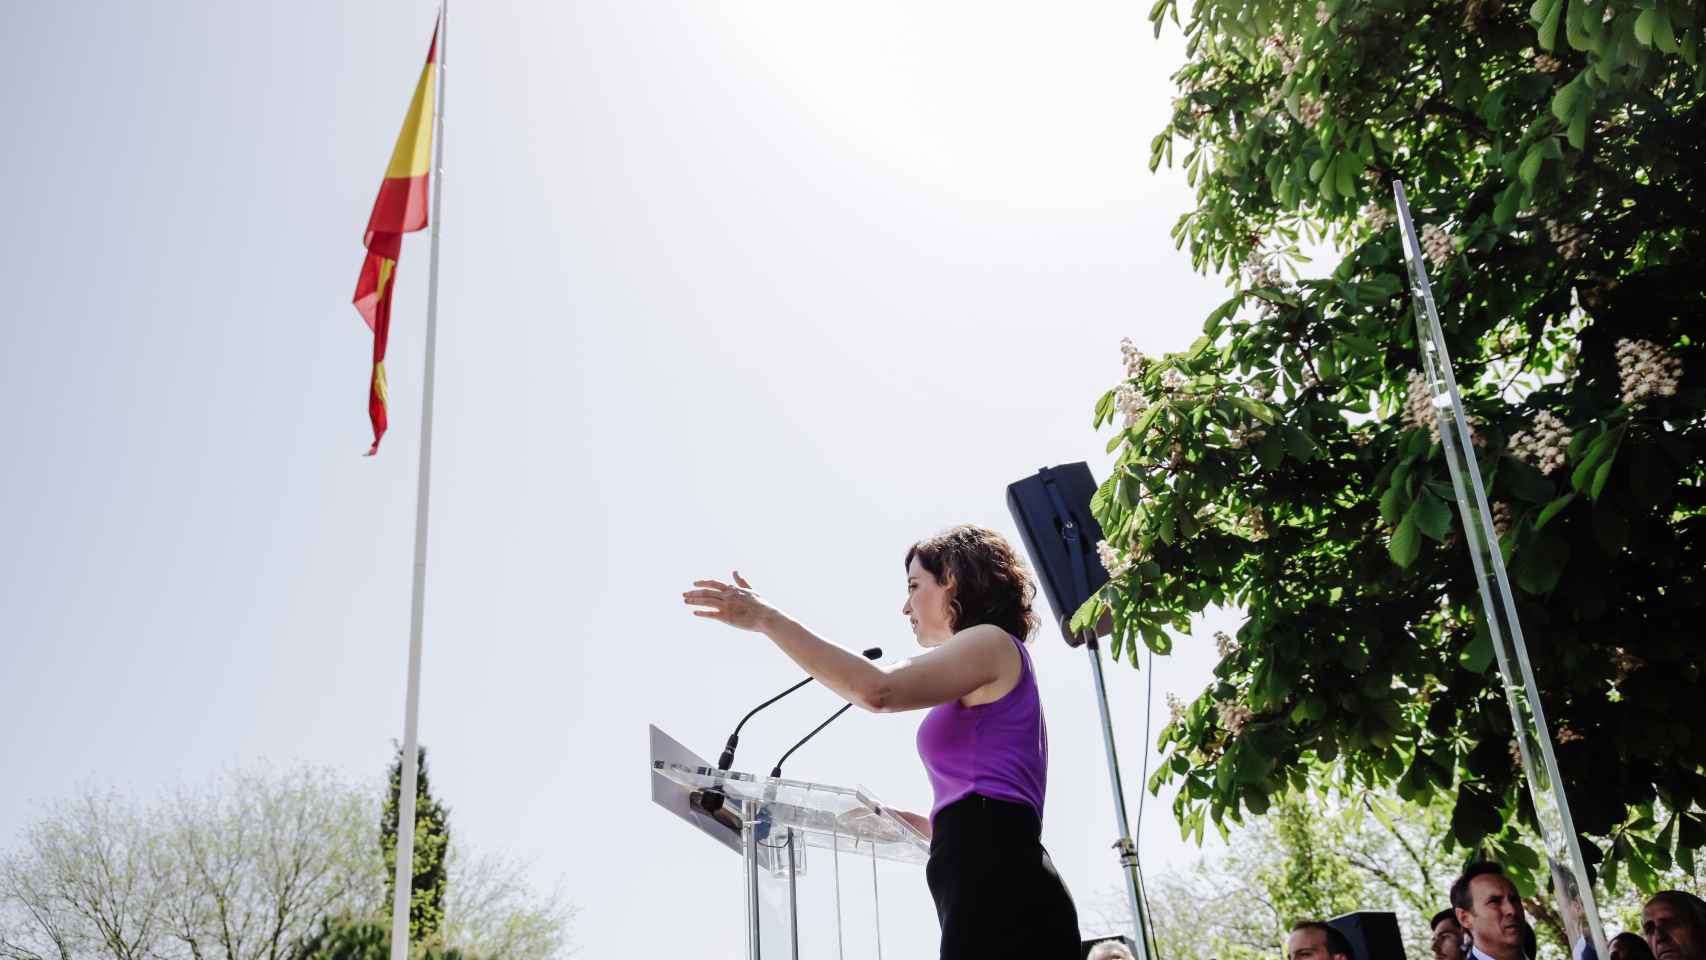 Isabel Díaz Ayuso interviene en el acto de campaña para presentar su candidatura a liderar el PP de Madrid.